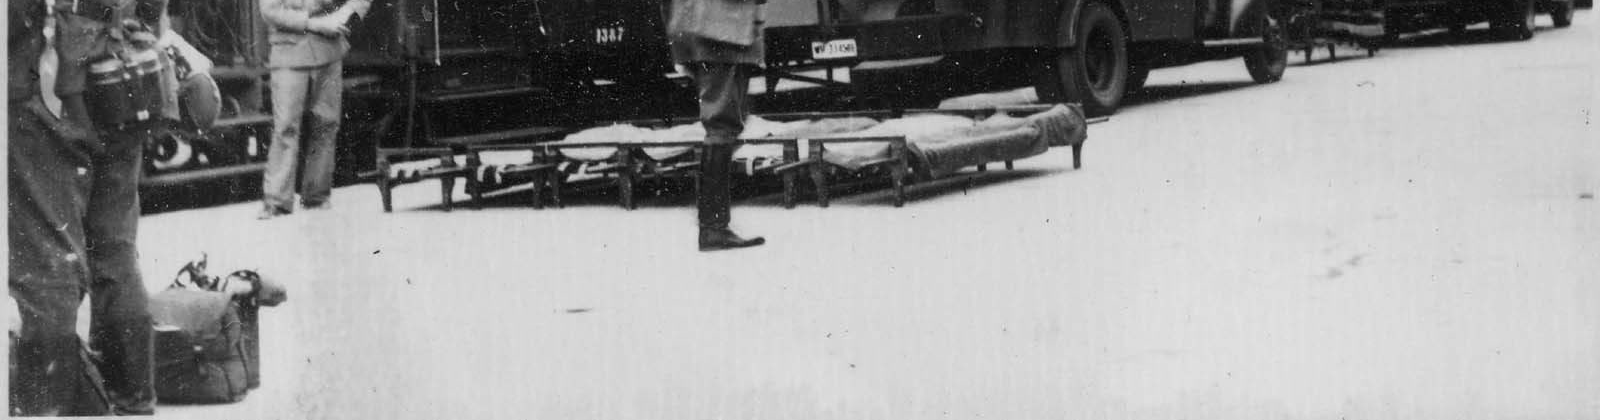 Enligt 1940 års krigssjukvårdsplan tilldelades svenska armén åtta sjukhuståg. De hade nummer H35 - H42 och hade 208 vårdplatser per tåg. 12 Så beredskap fanns på området.